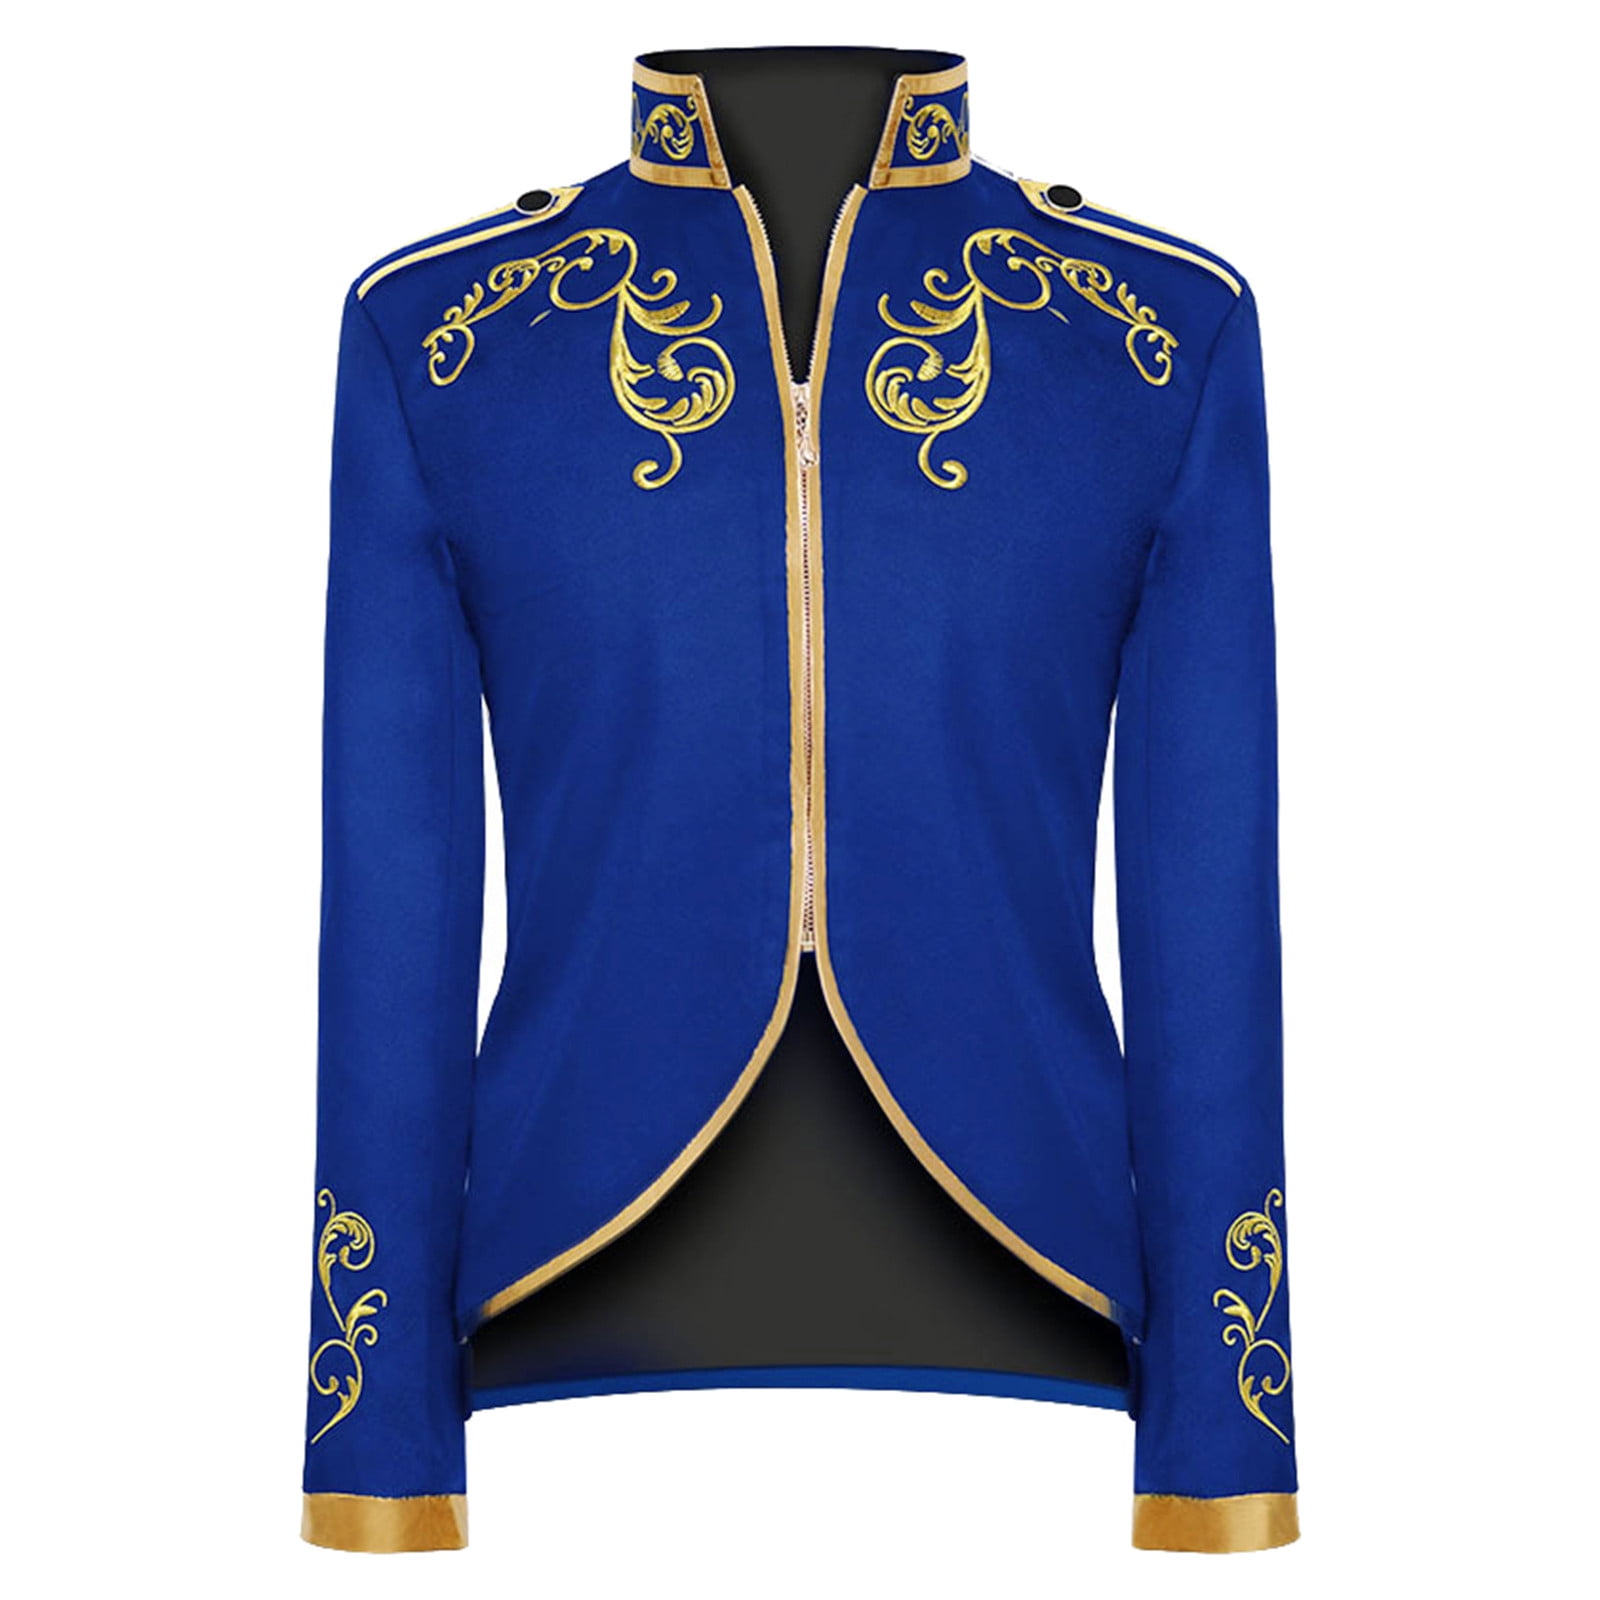 Details 260+ long jacket style suits best